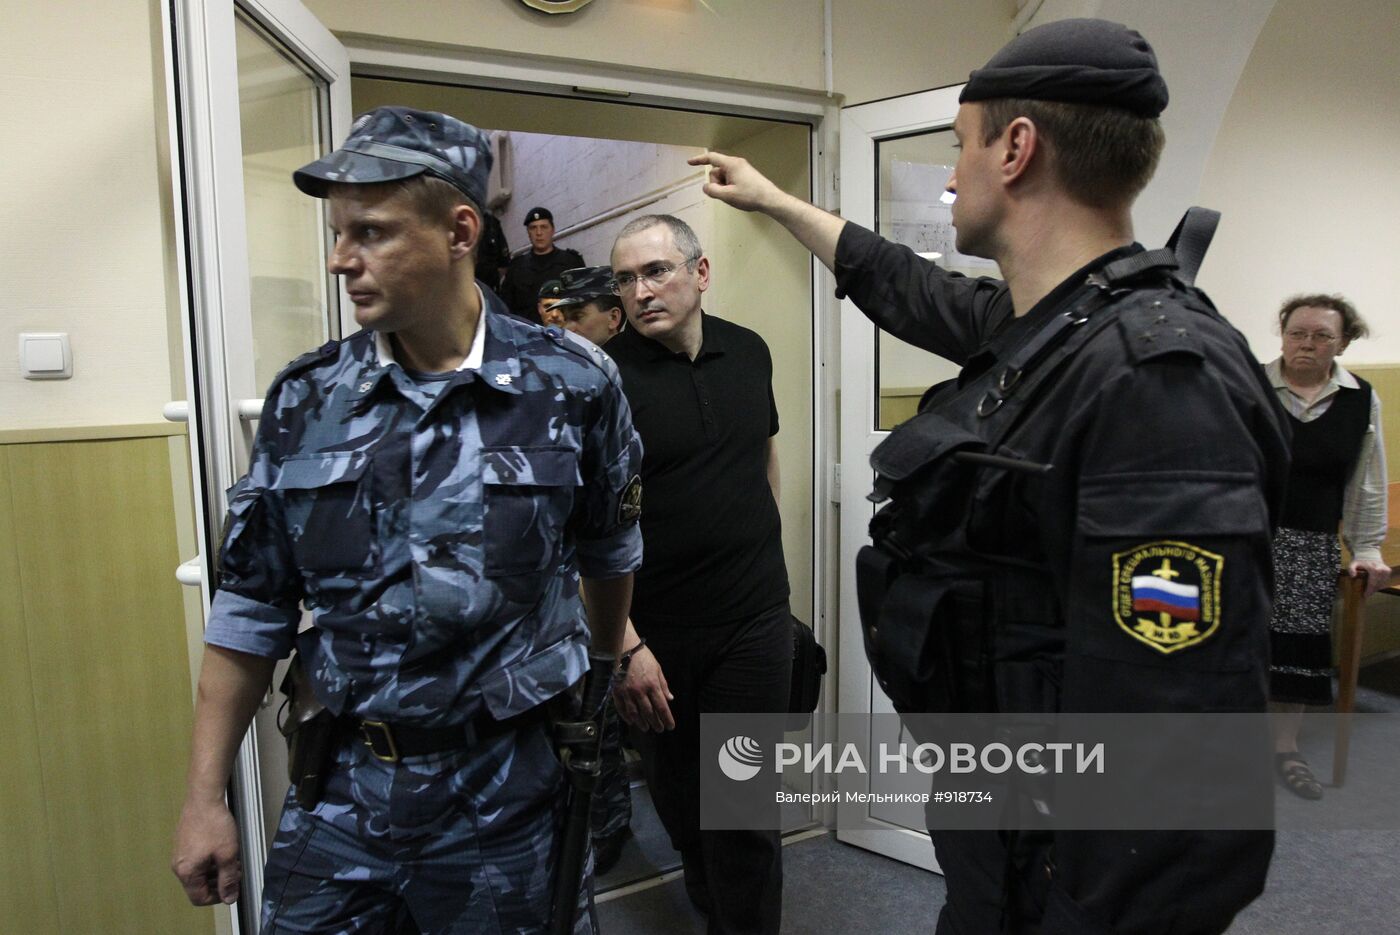 Михаил Ходорковский выступит в качестве свидетеля в суде